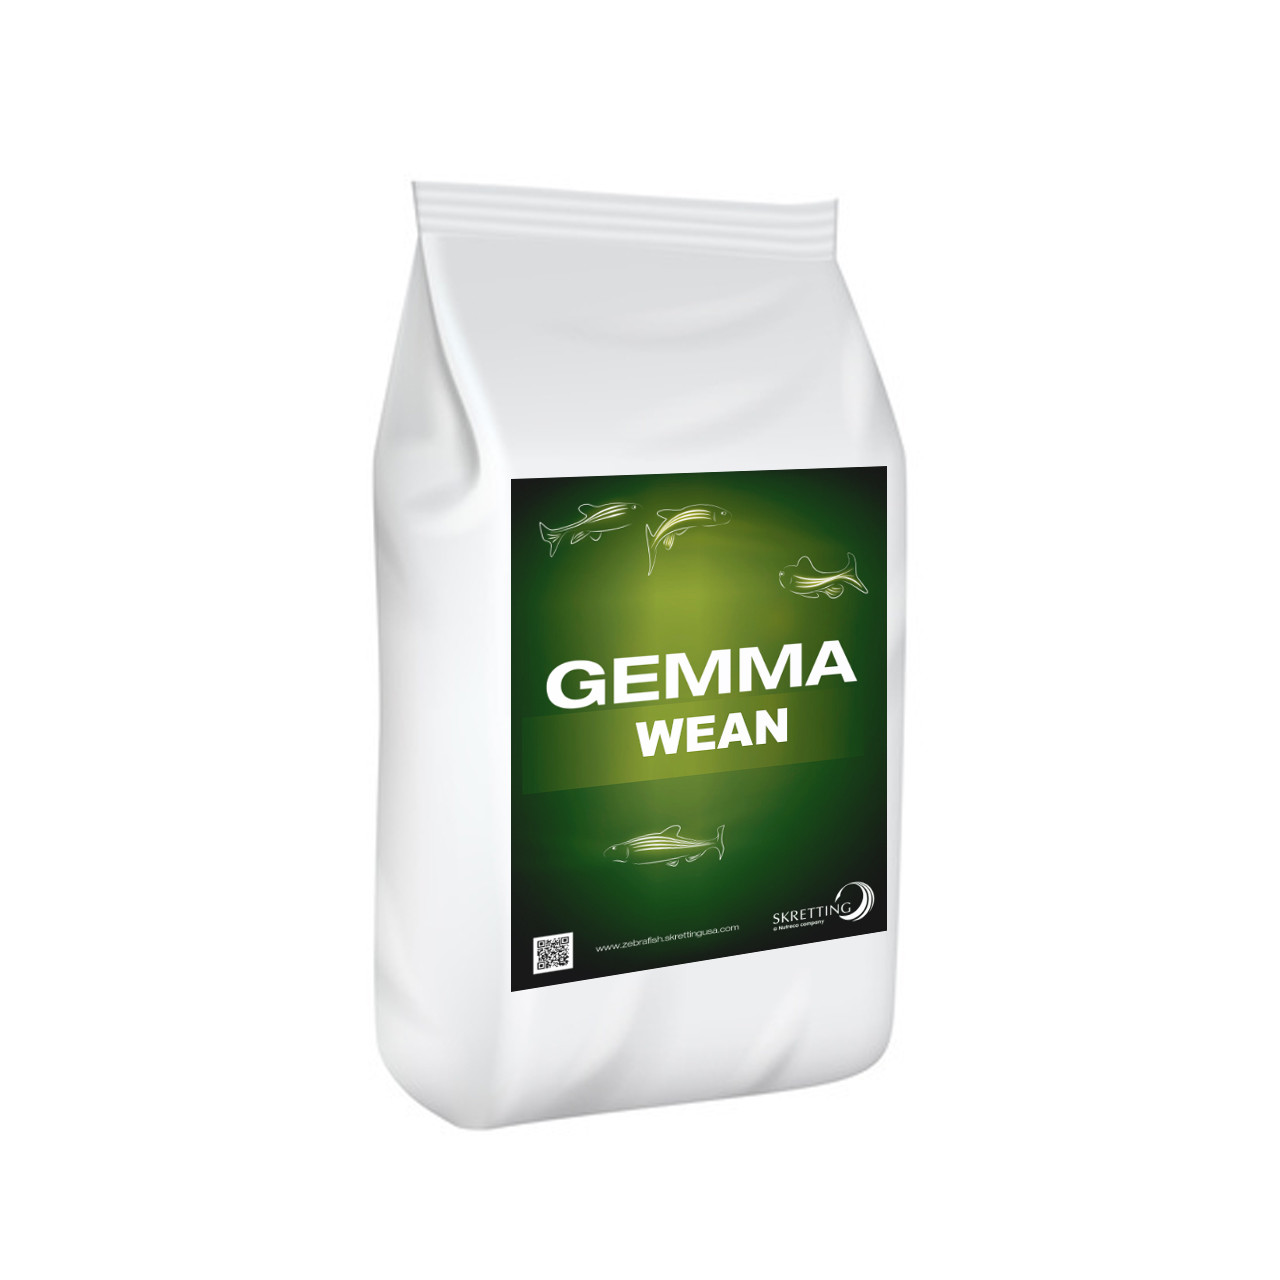 Skretting Alimento Gemma Wean de 0.1 mm